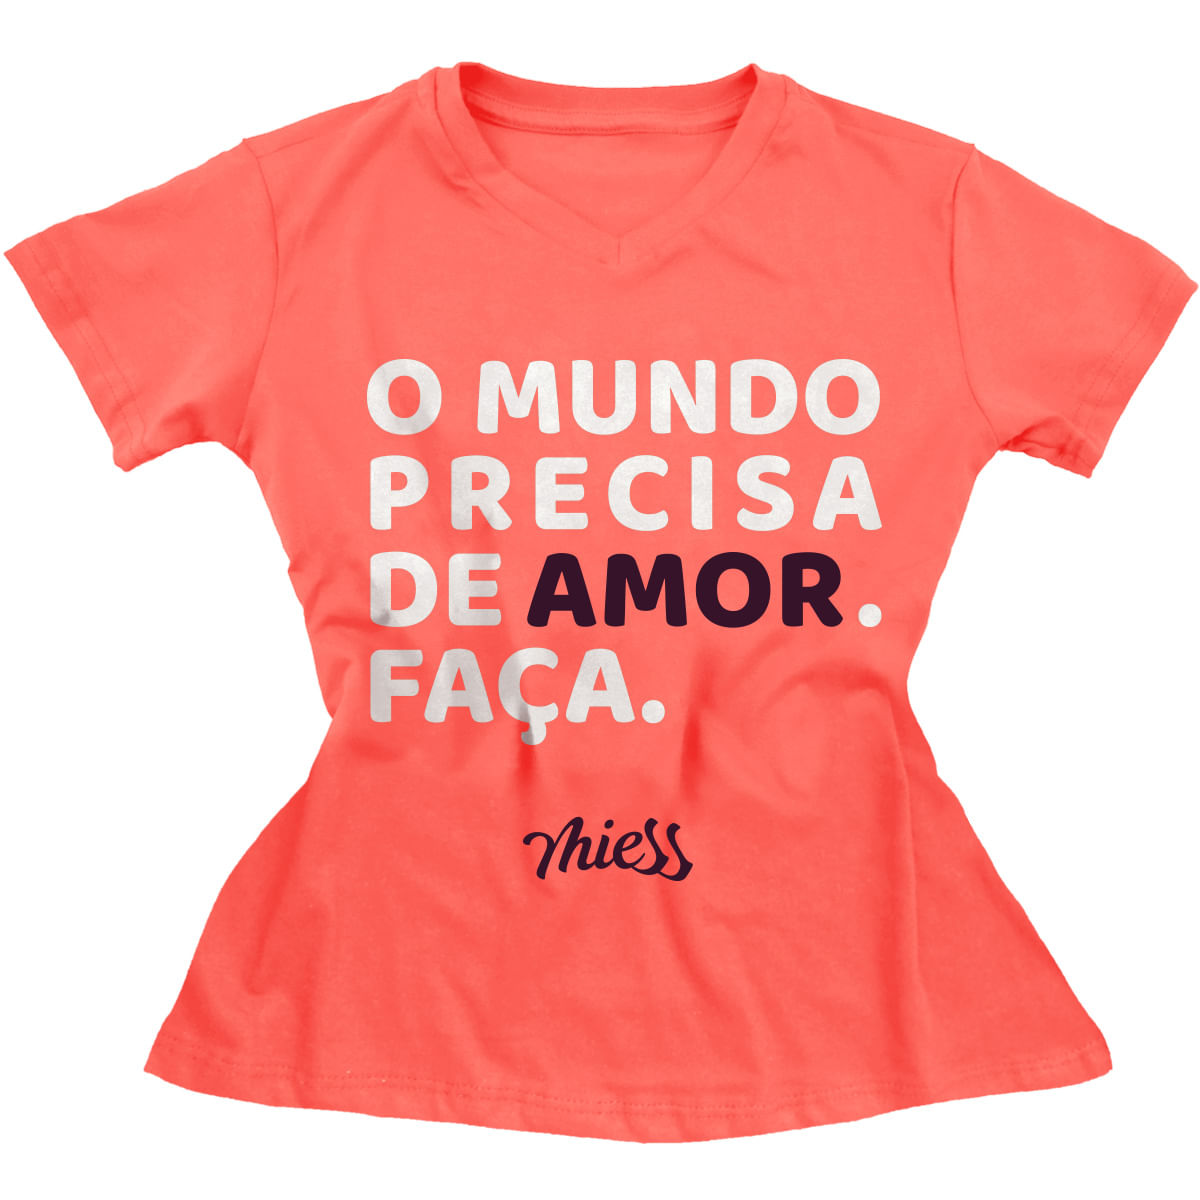 Mimo Camiseta Feminina O Mundo Precisa de Amor. Faça. Miess